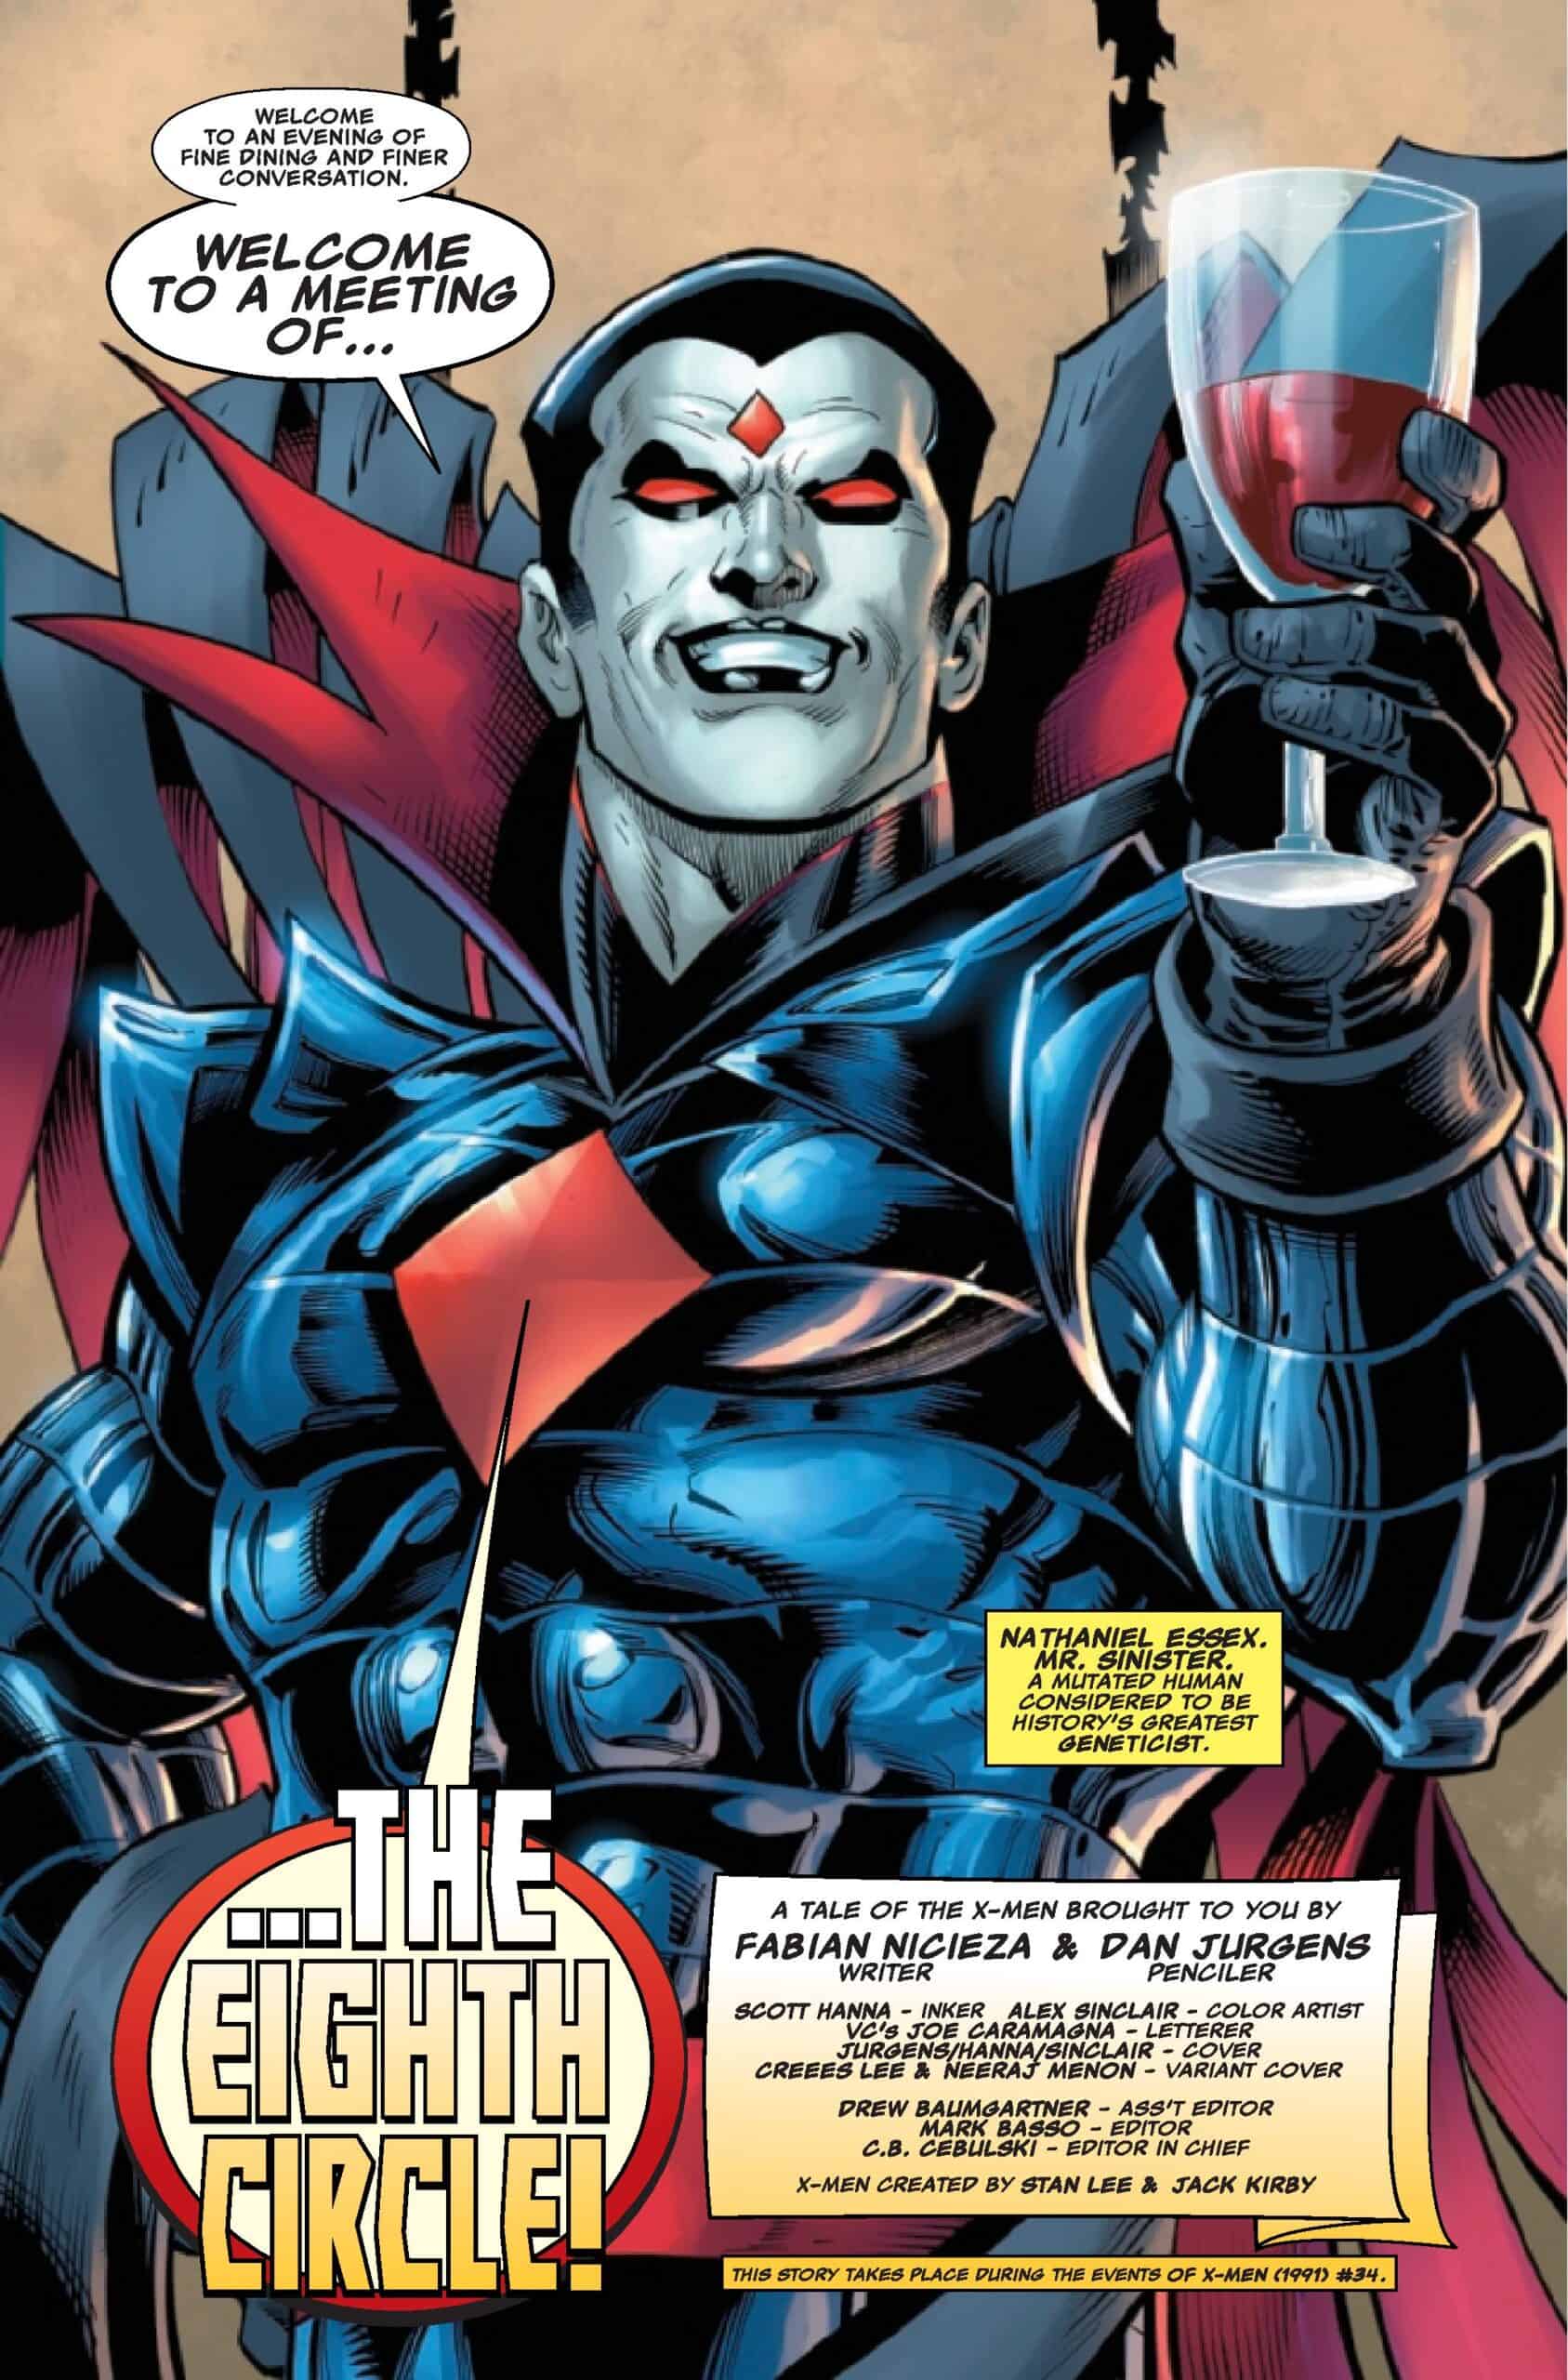 EXCLUSIVE SNEAK PEEK: Preview of MARVEL COMICS X-MEN: LEGENDS #10 - Comic Watch